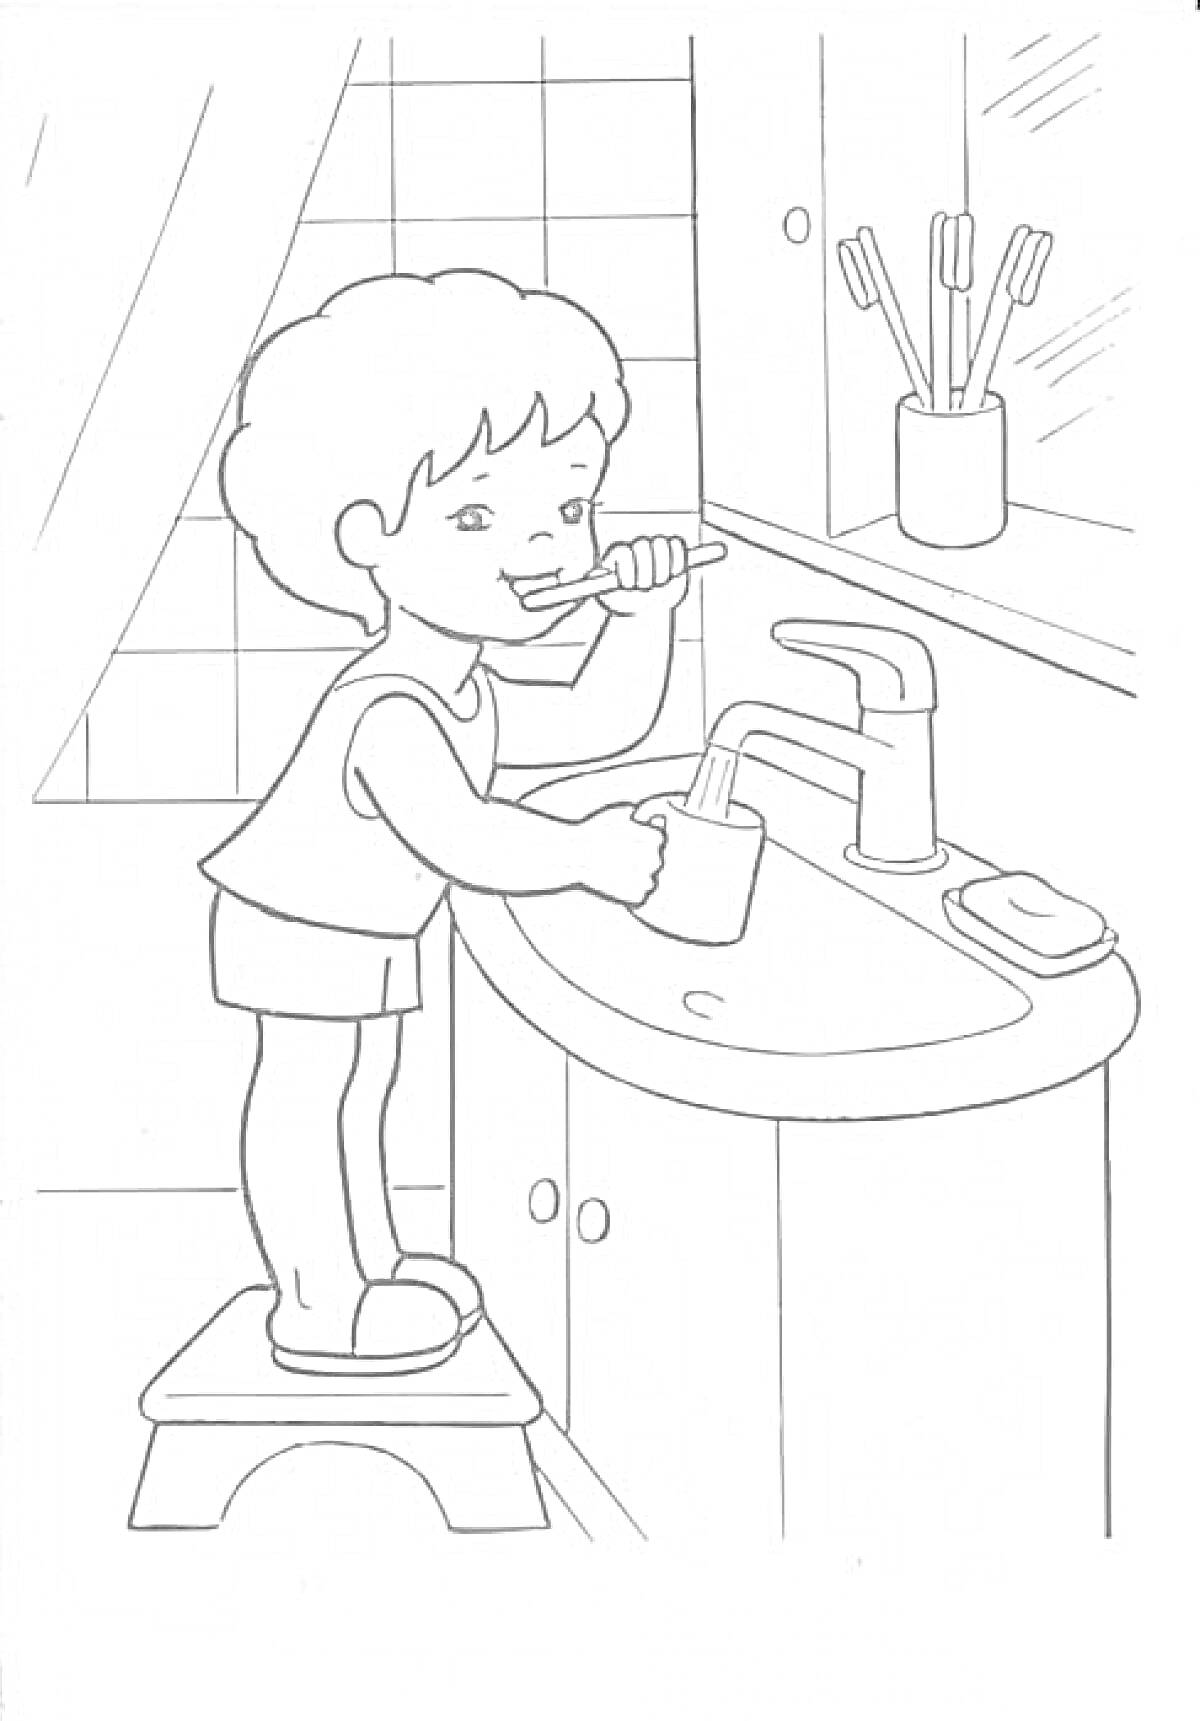 Ребенок чистит зубы в ванной комнате, на тумбочке мыло и кружка, в стаканчике зубные щетки